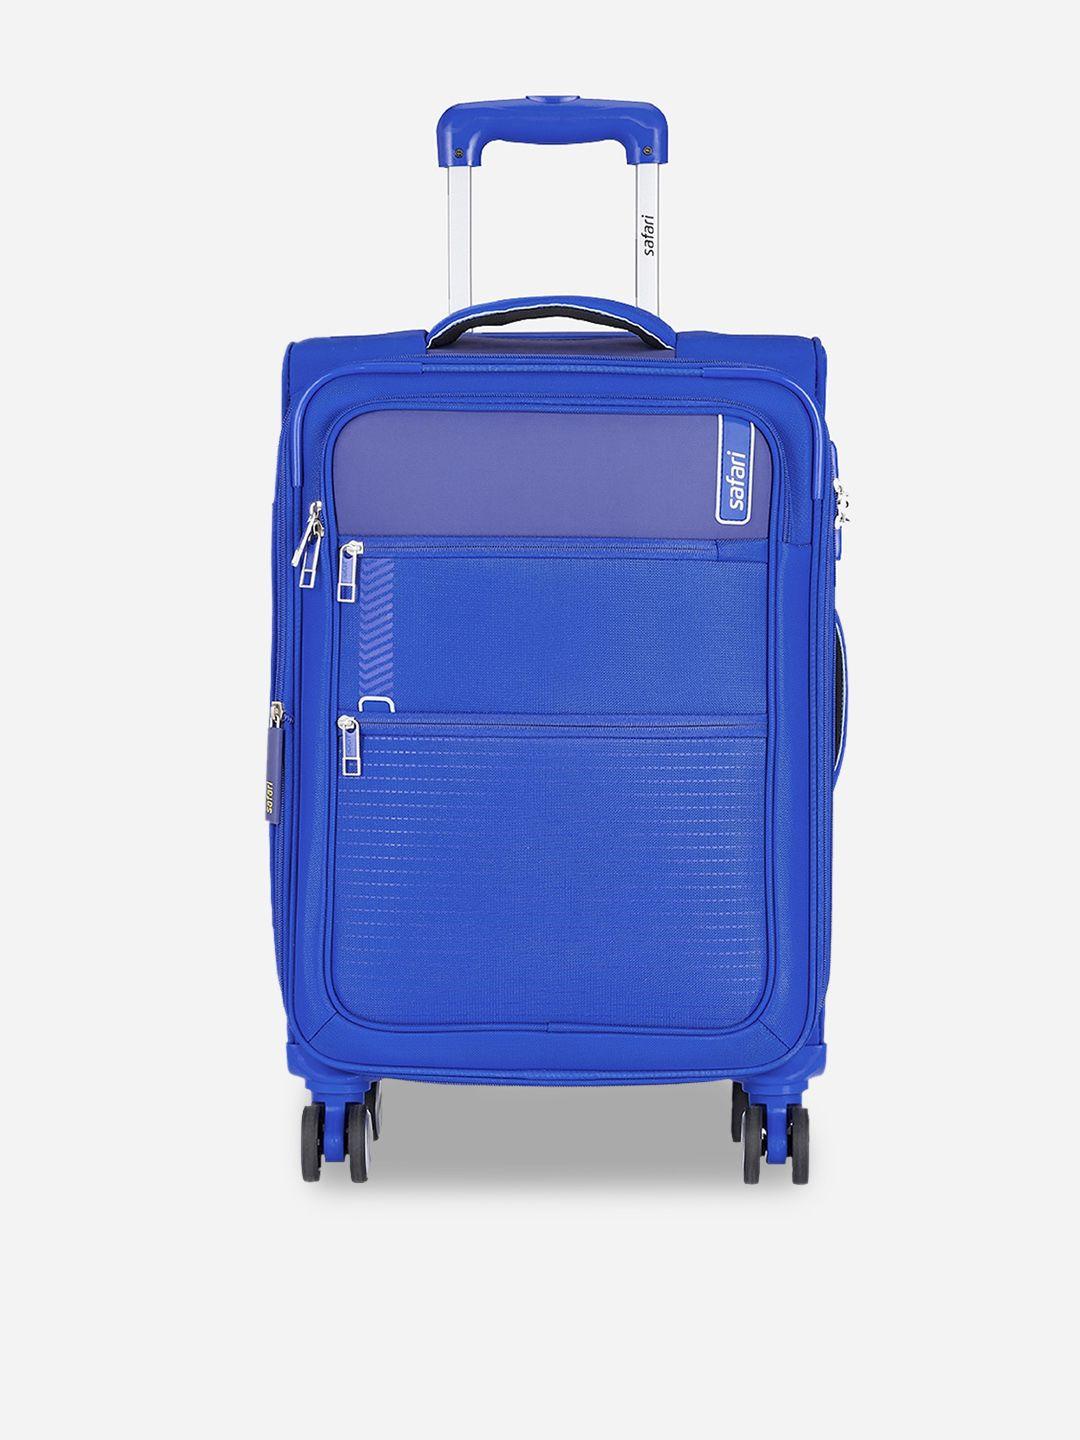 safari soft-sided medium trolley suitcase